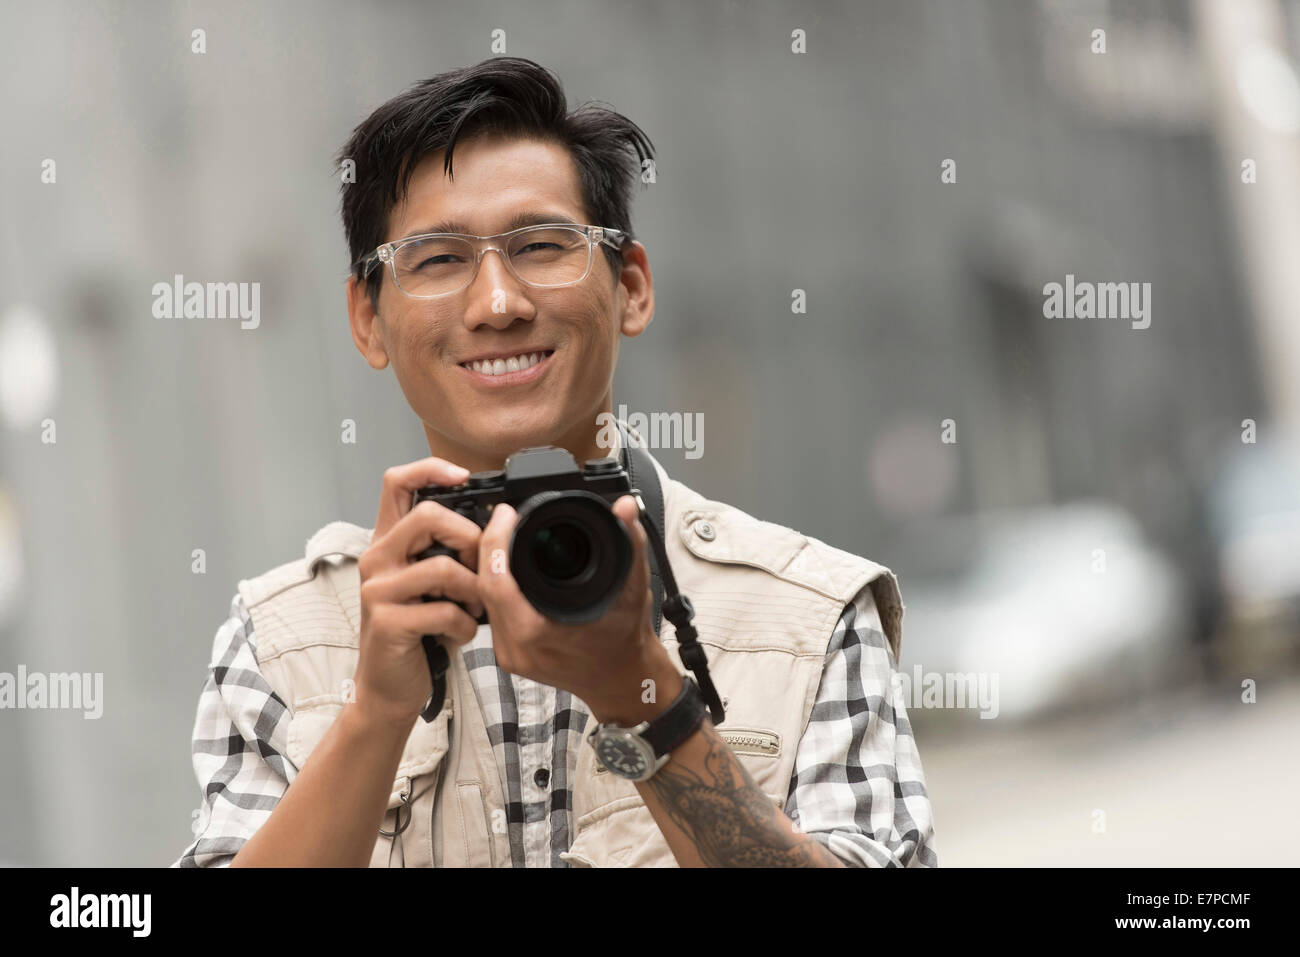 Retrato del hombre sujetando la cámara Foto de stock